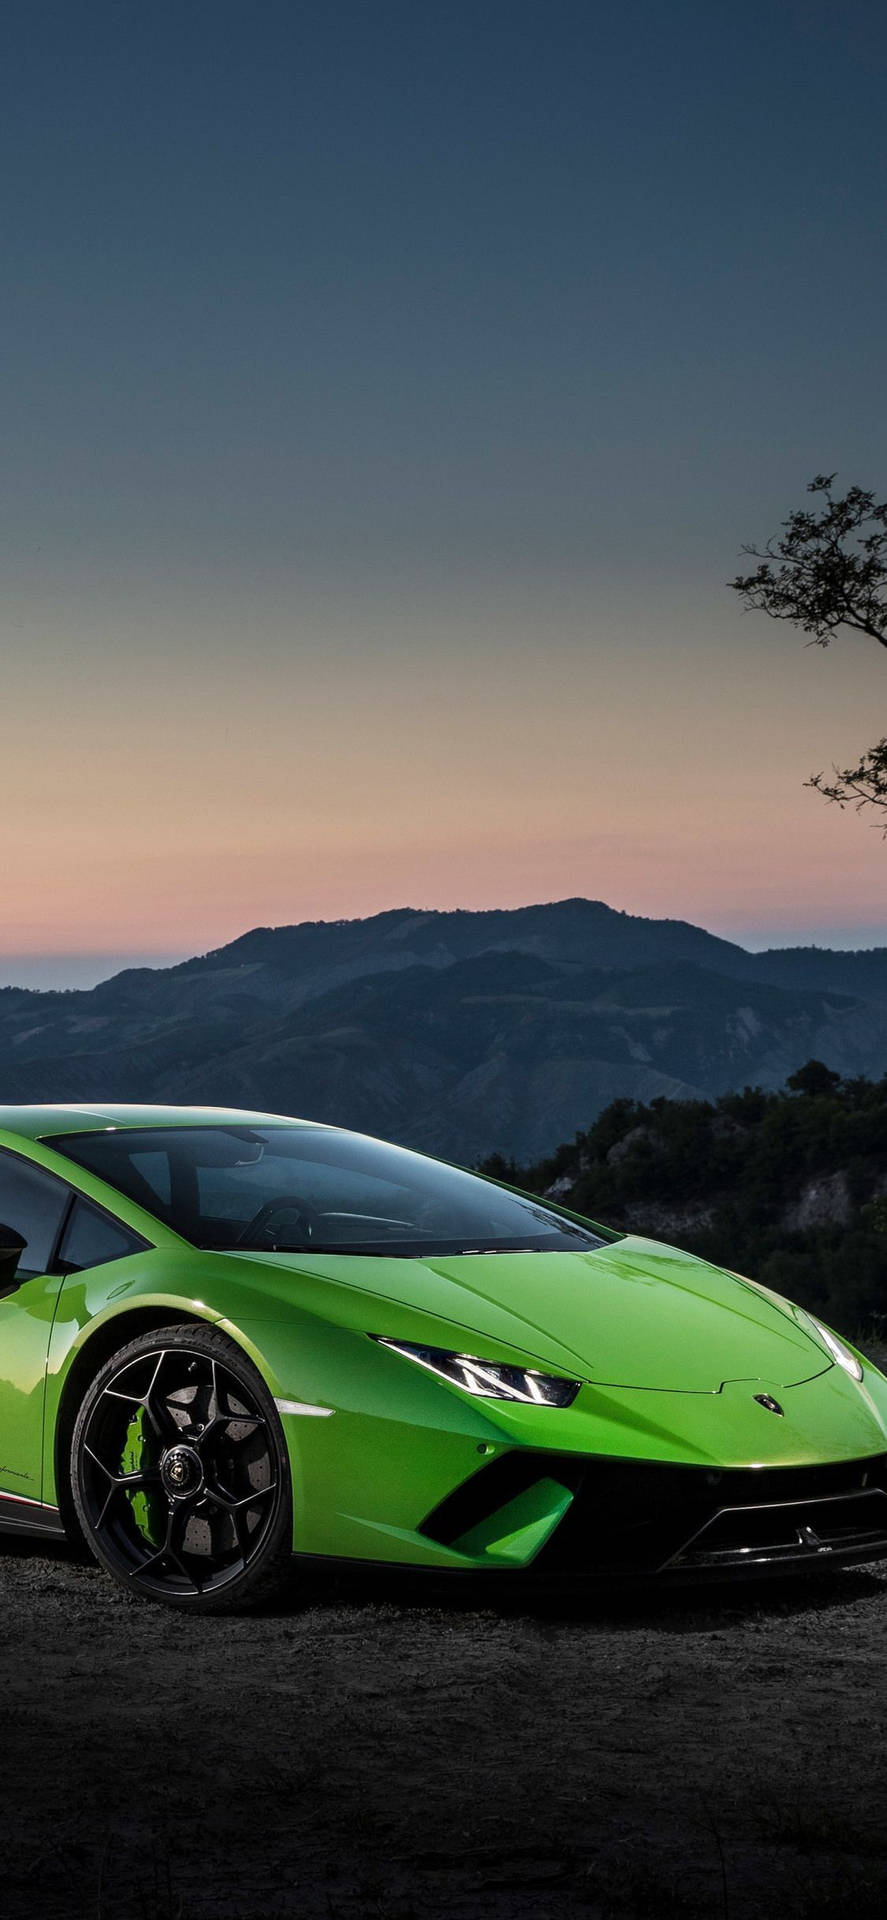 iPhone X Car Green Lamborghini Huracan Wallpaper